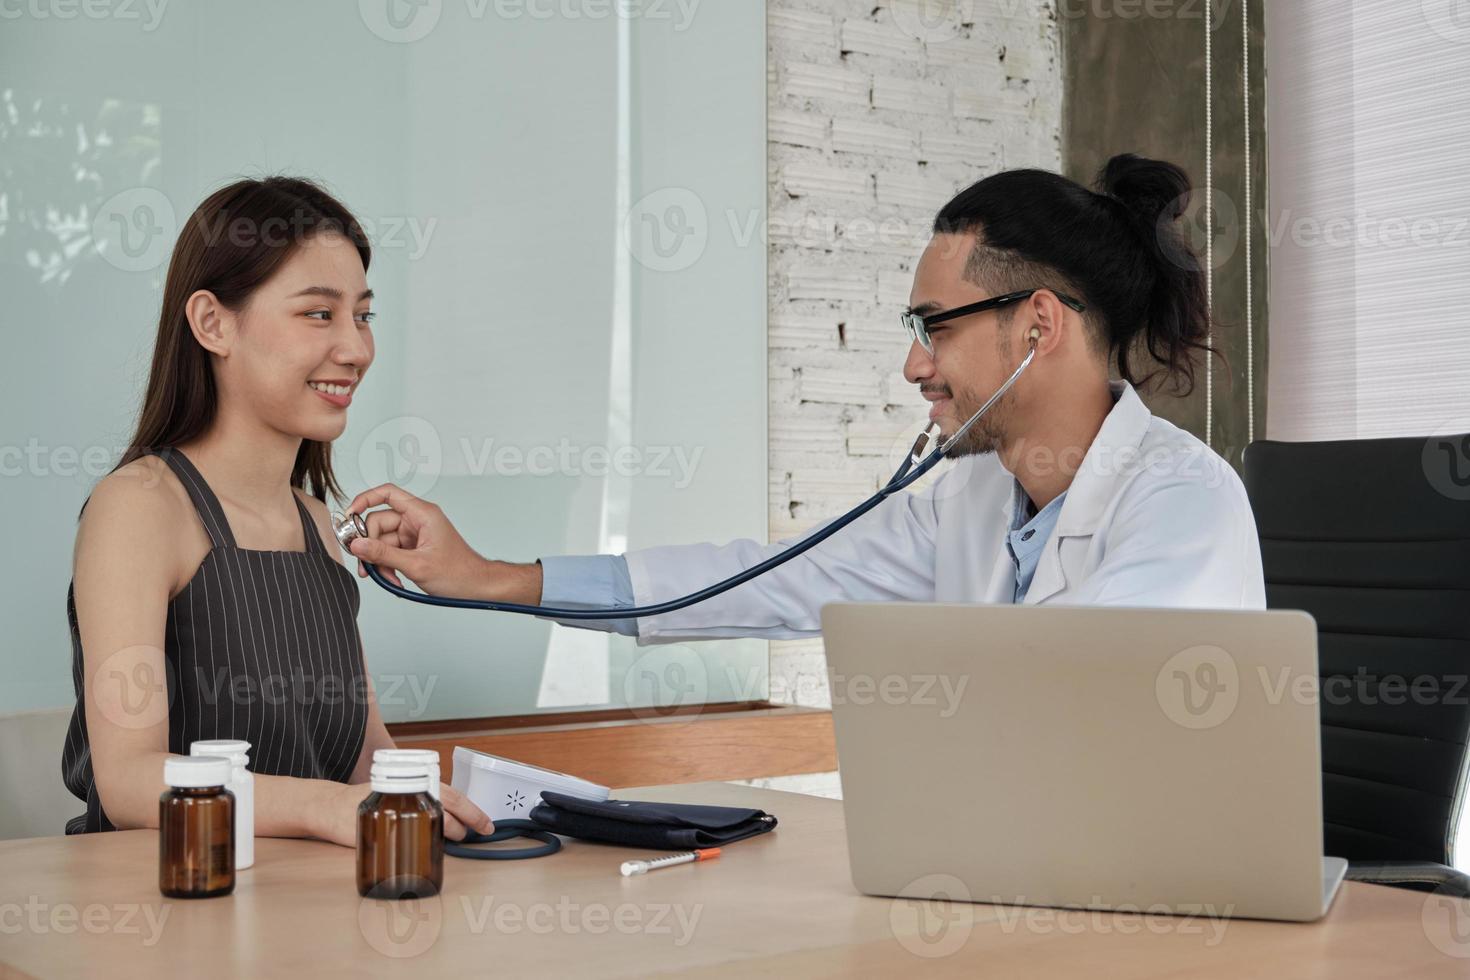 medische behandeling en controle, een jonge mannelijke arts onderzoekt een vrouwelijke patiënt van Aziatische etniciteit met een stethoscoop, adviseert een afspraakbezoek voor een gezondheidsconsult in een kliniek in een ziekenhuis. foto